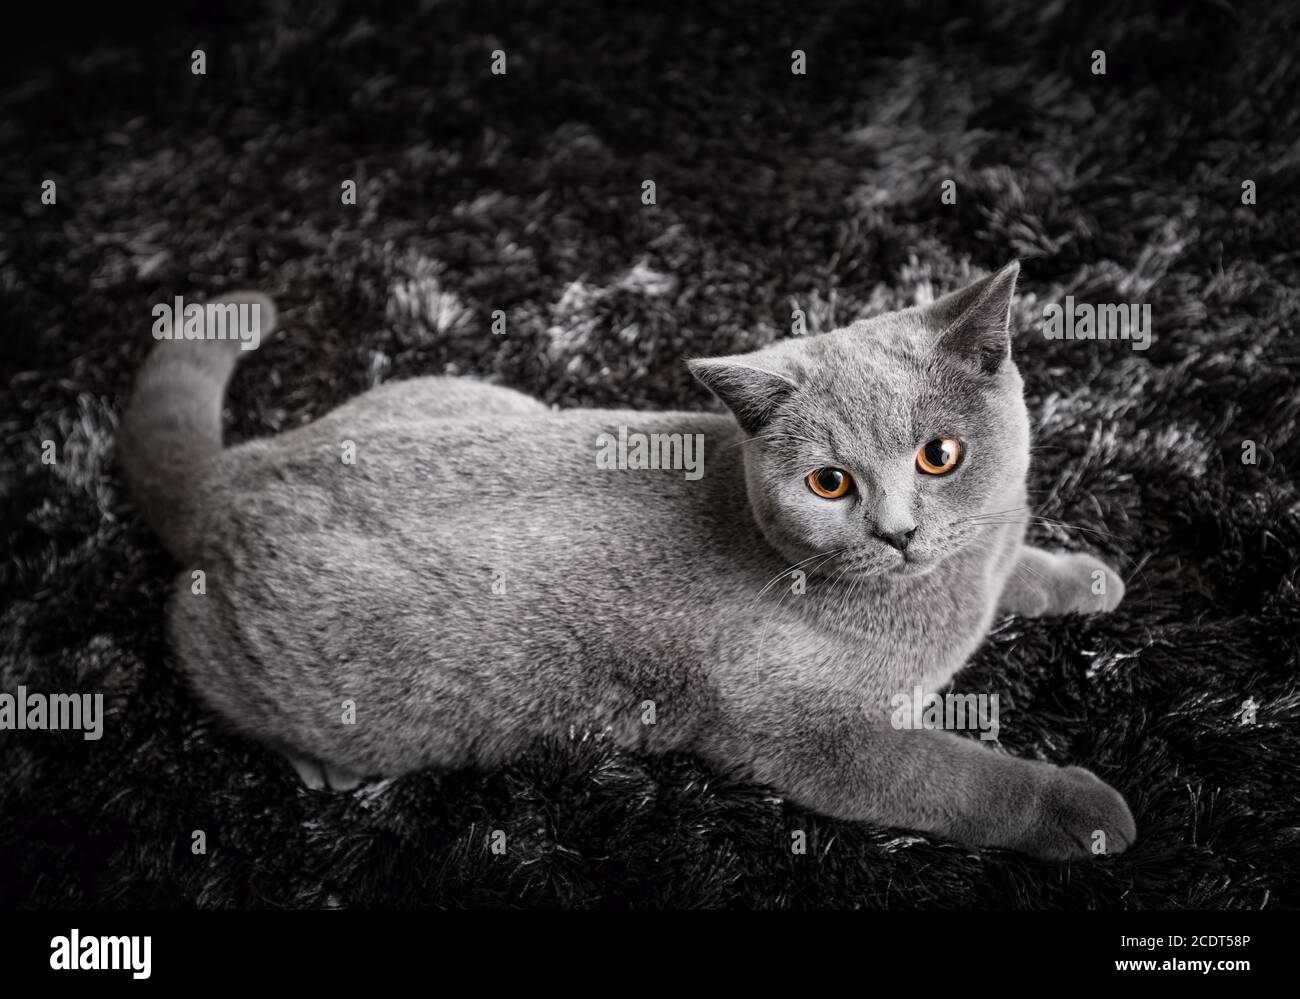 Liebenswert Katze mit Ingwer orange Augen liegen auf schwarz und Weißer Teppich Stockfoto